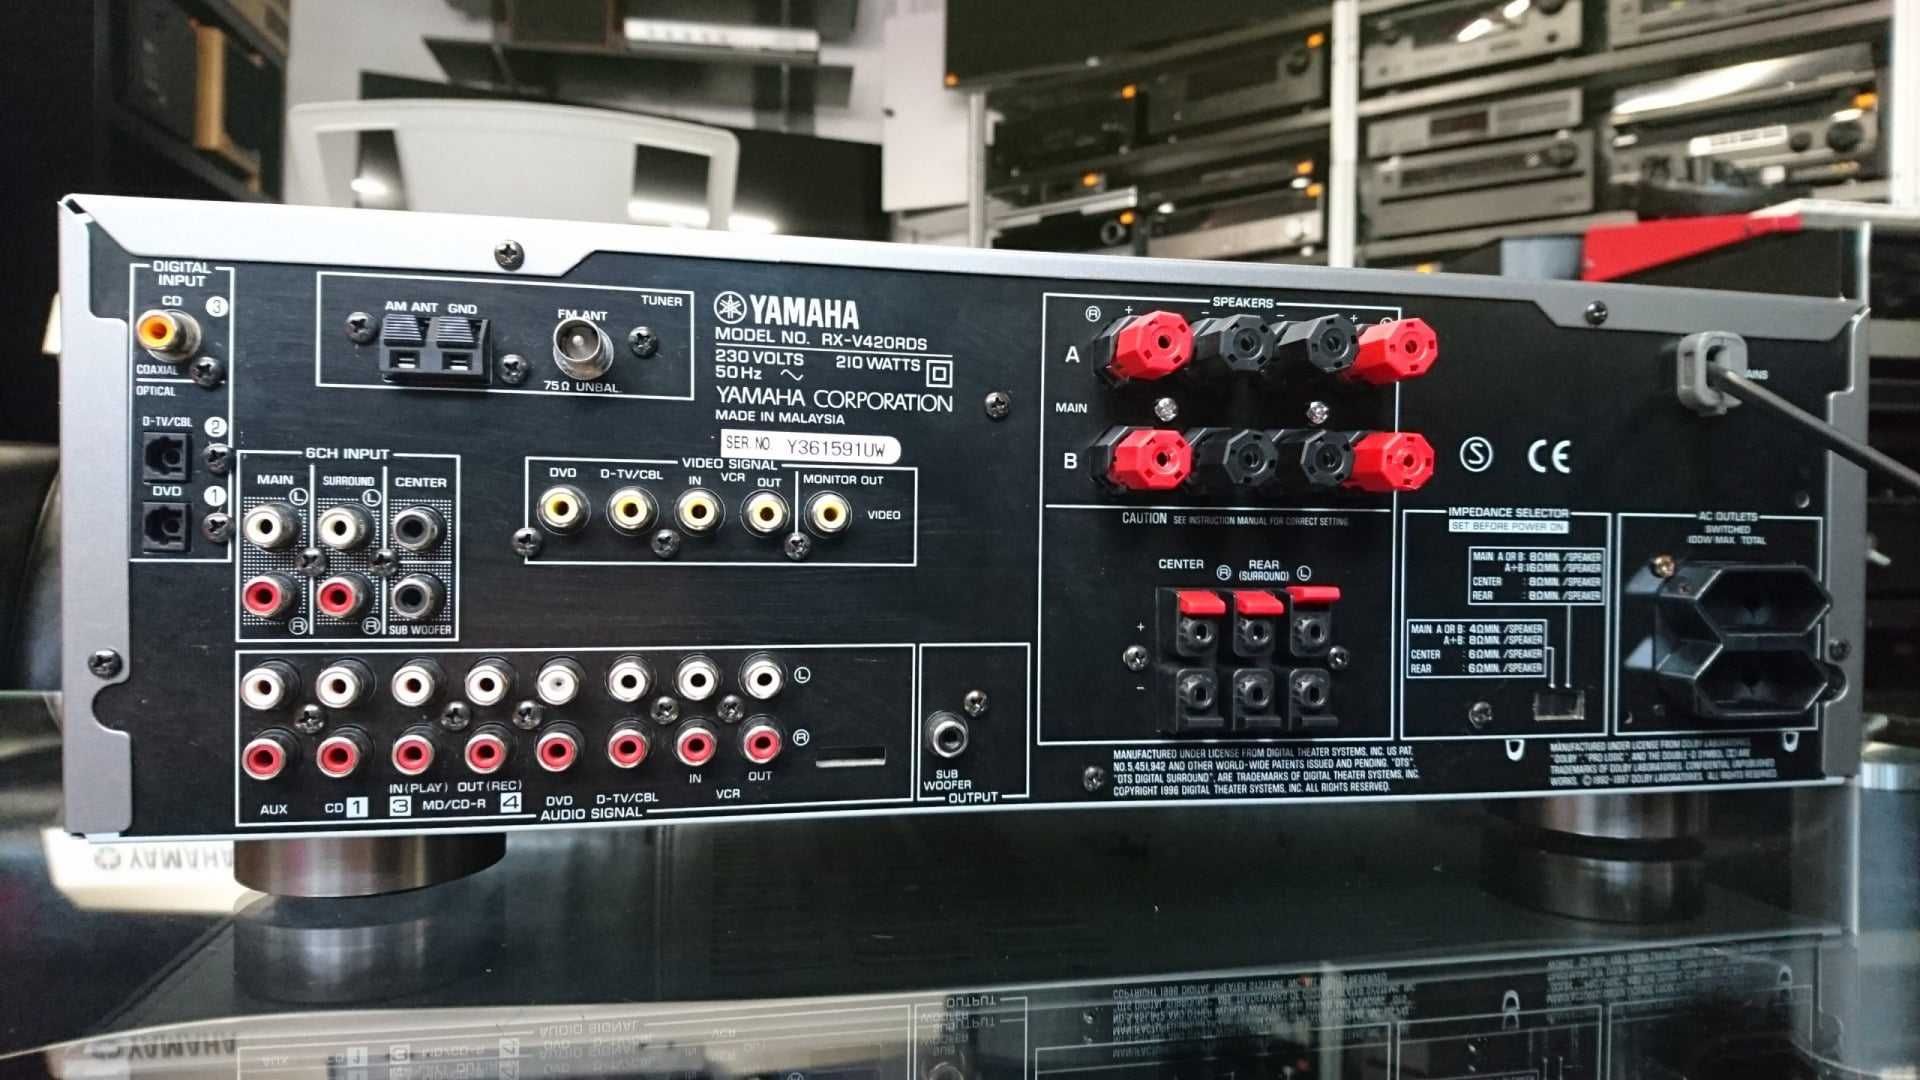 Yamaha RX-V420RDS 5.1 Av Receiver natural sound